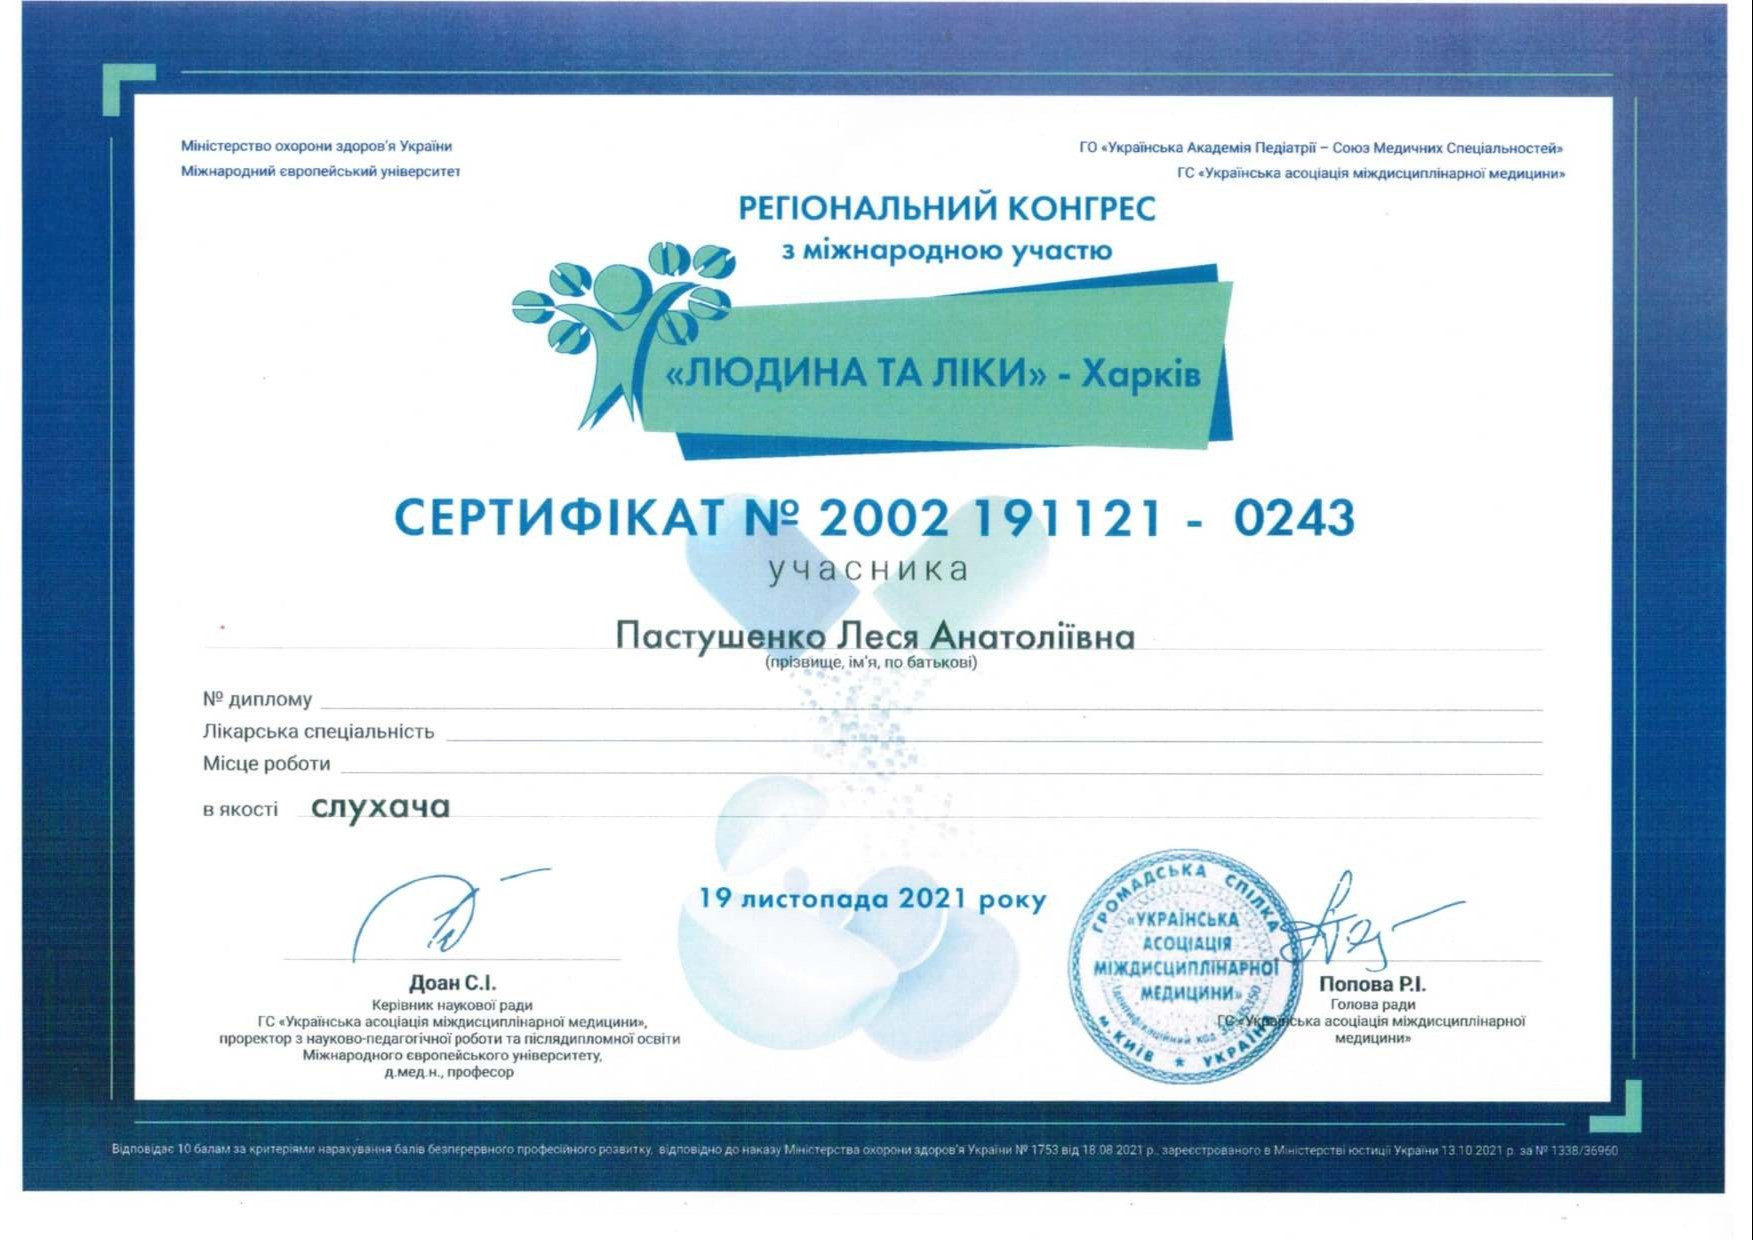 Сертификат об участии в региональном конгрессе с международнымы участием